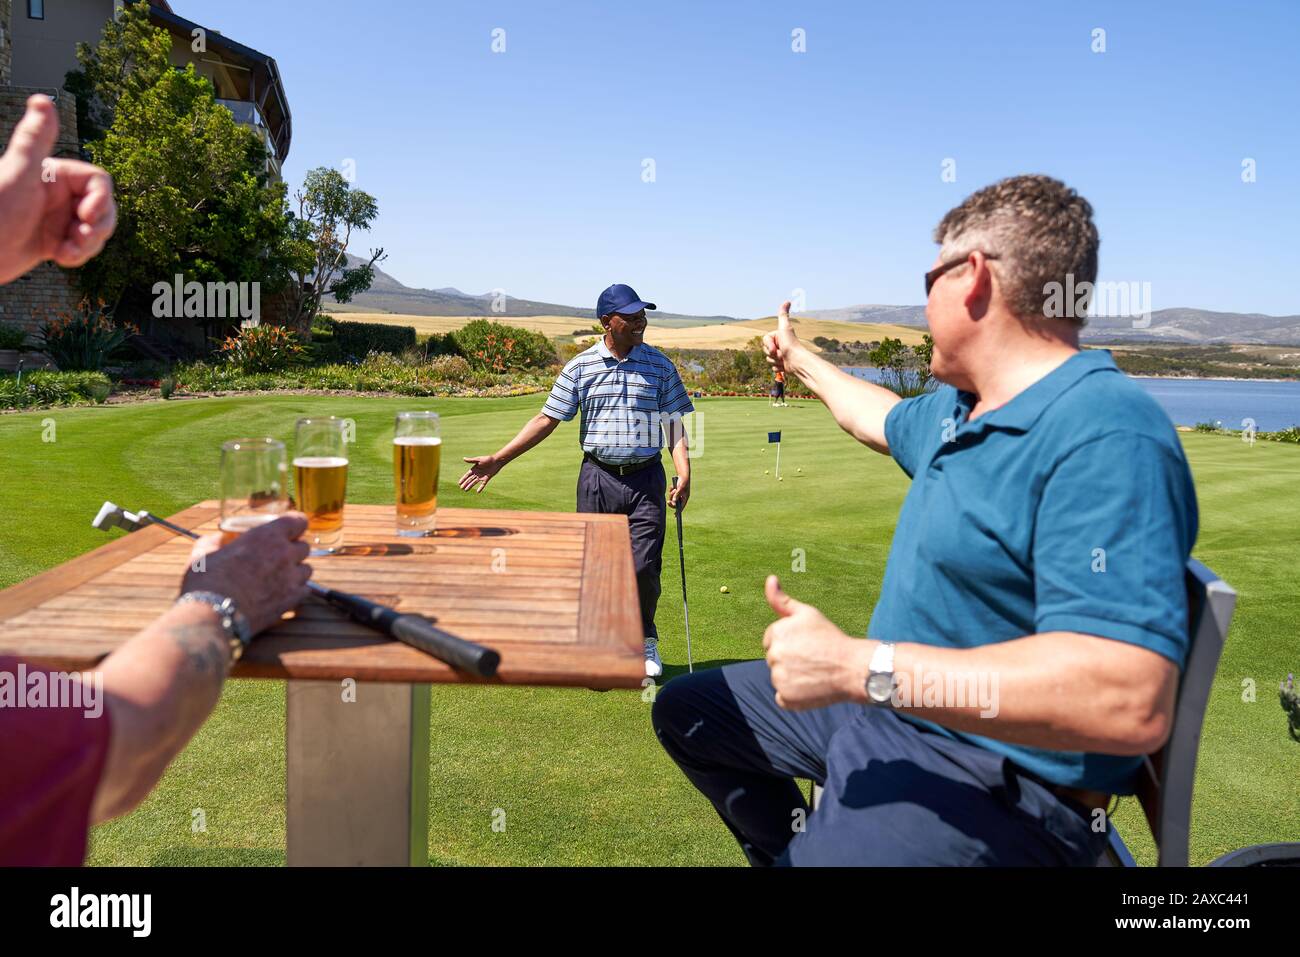 Les golfeurs de sexe masculin boivent de la bière à l'ami qui encourage la pratique en mettant du vert Banque D'Images